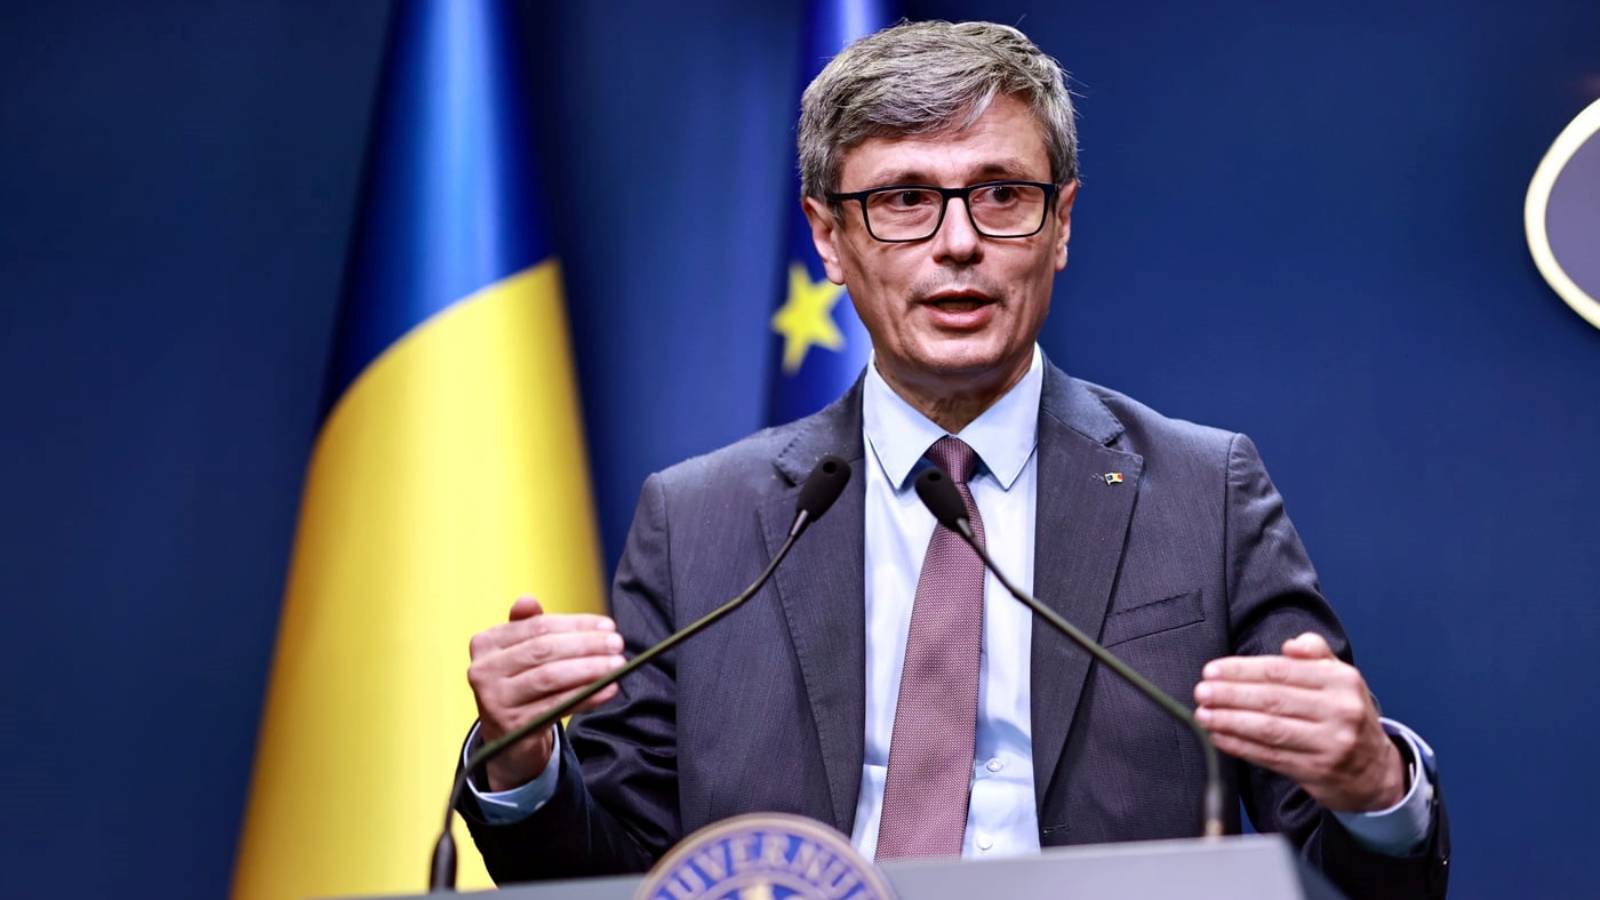 Officielle meddelelser fra energiministeren i sidste øjebliks foranstaltninger Rumænien